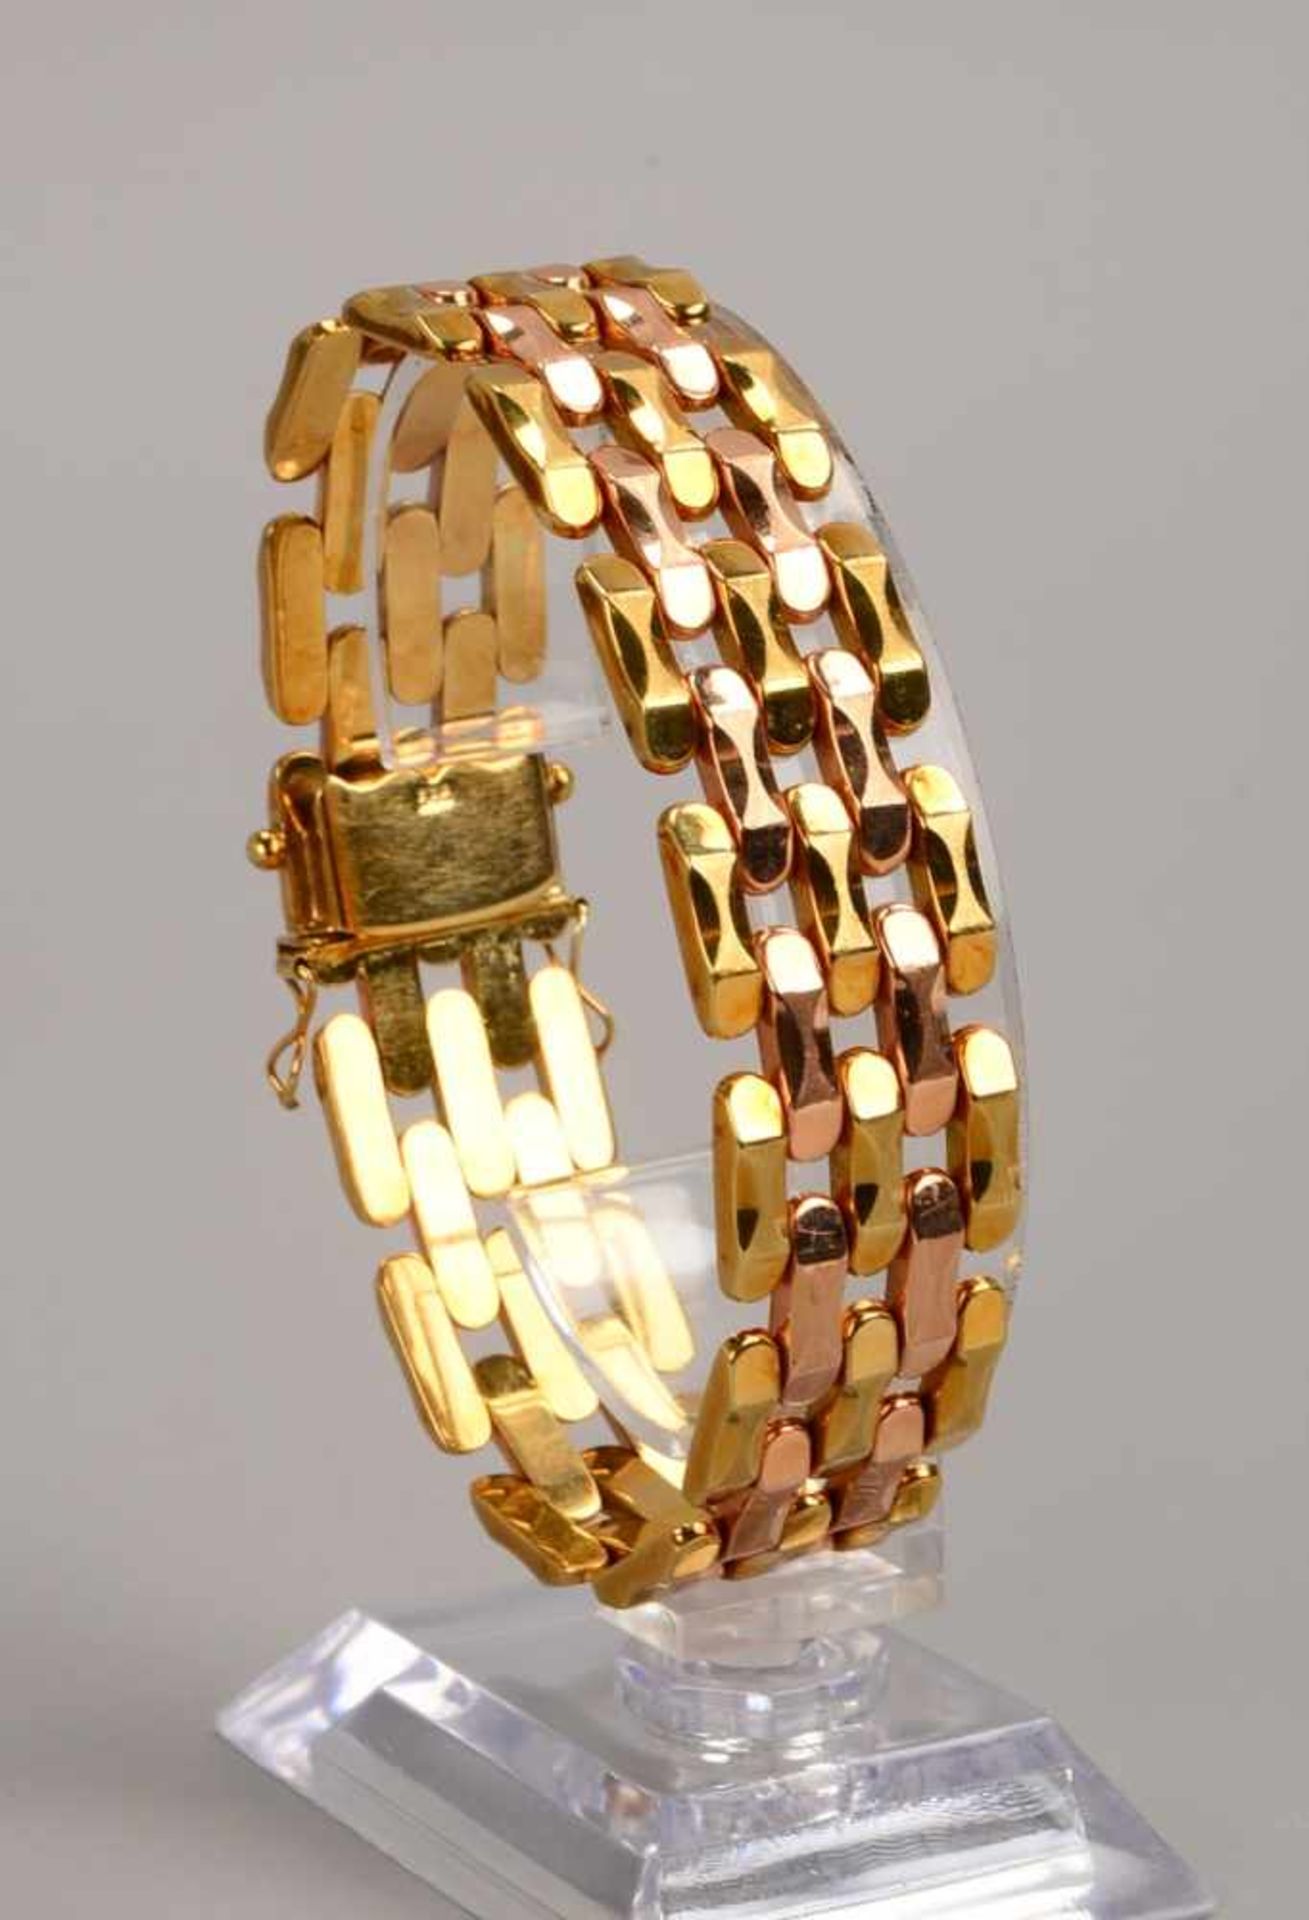 Armband, 585 Gold/Bicolor, mit Kastenschloss/Schloss mit 2x Sicherheitsachten; Länge 19 cm, Breite